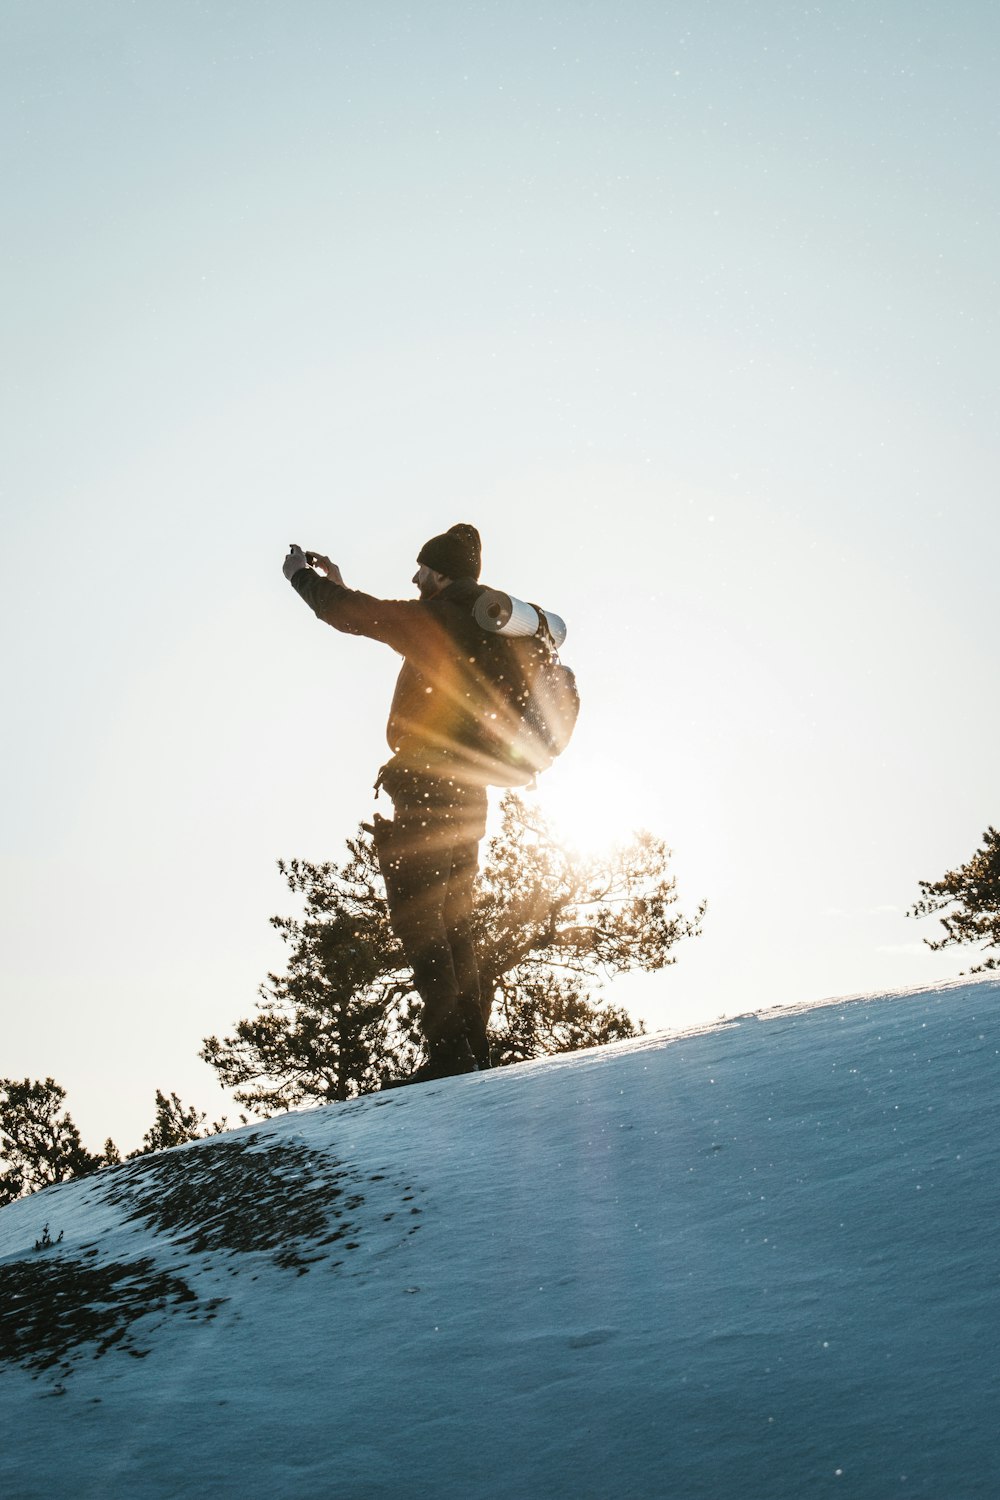 Ein Mann fährt mit einem Snowboard einen schneebedeckten Hang hinunter